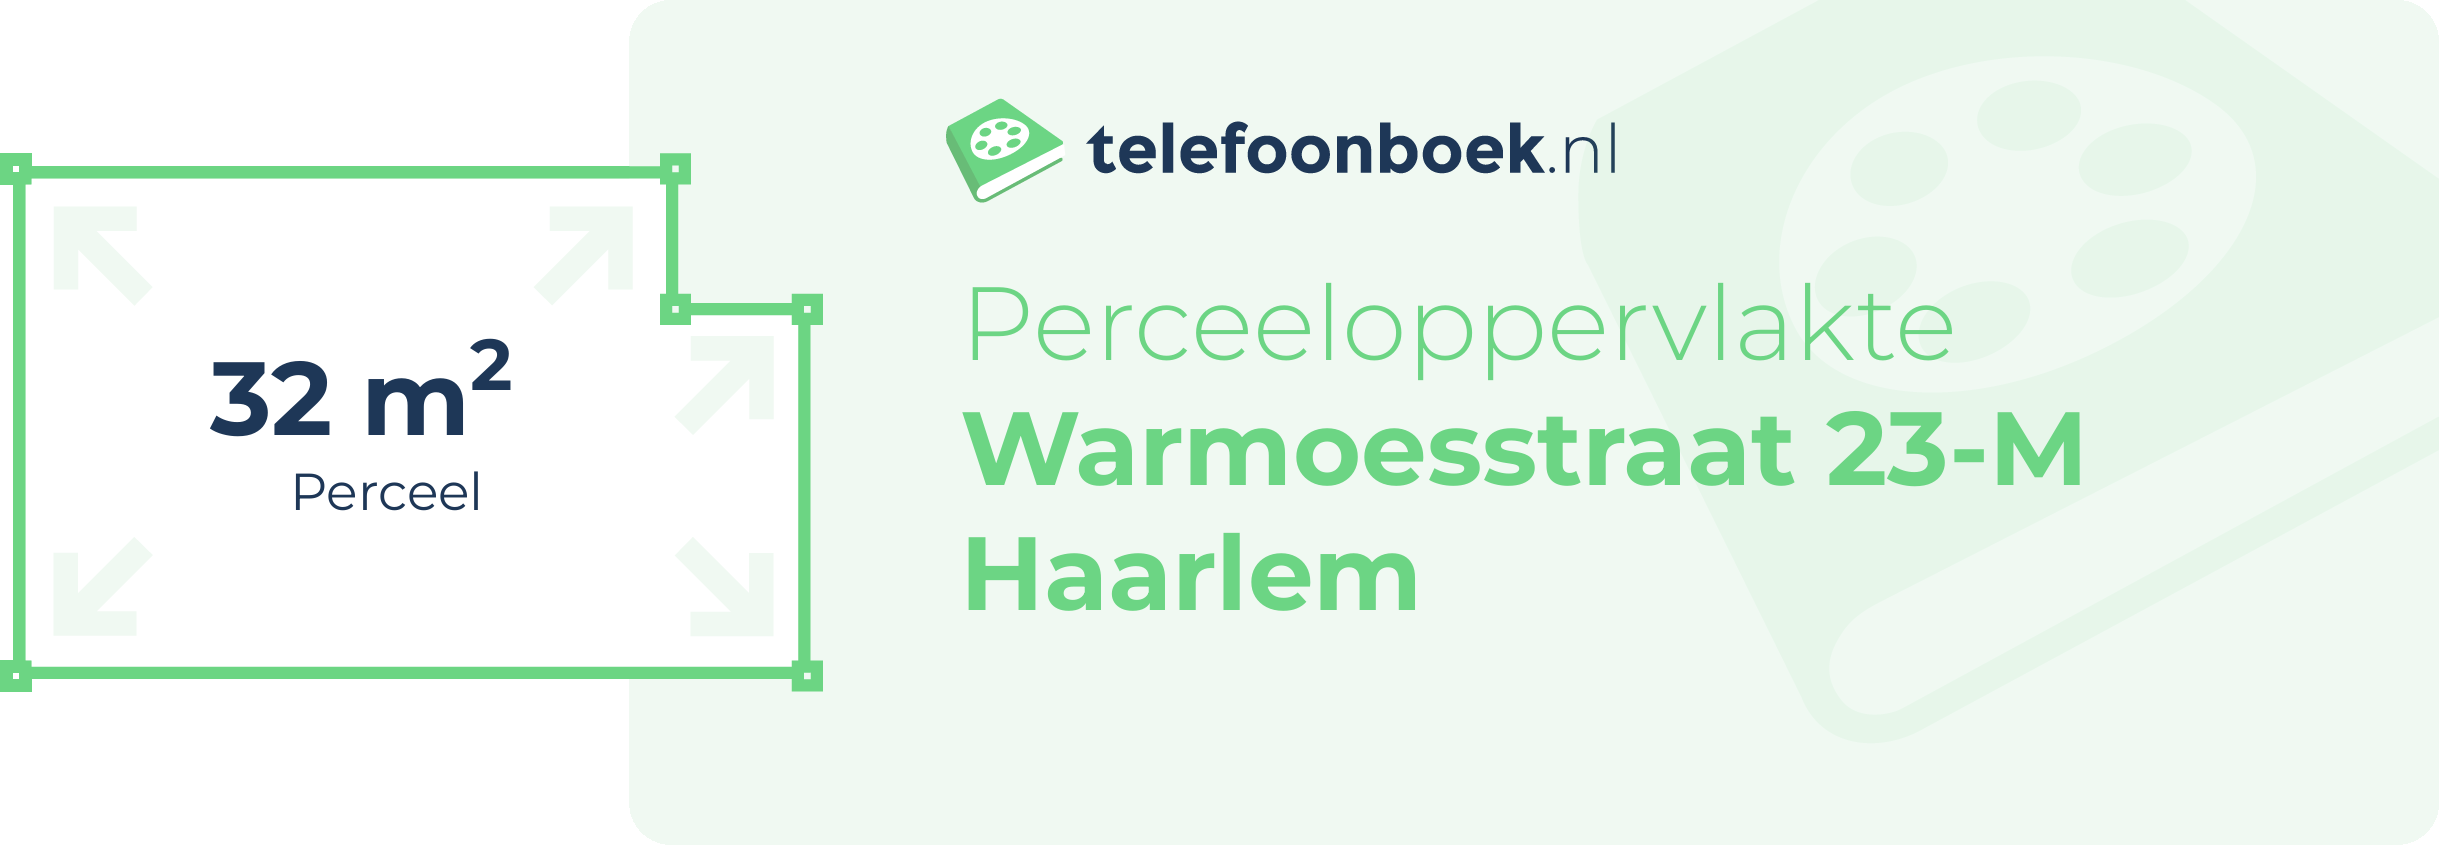 Perceeloppervlakte Warmoesstraat 23-M Haarlem